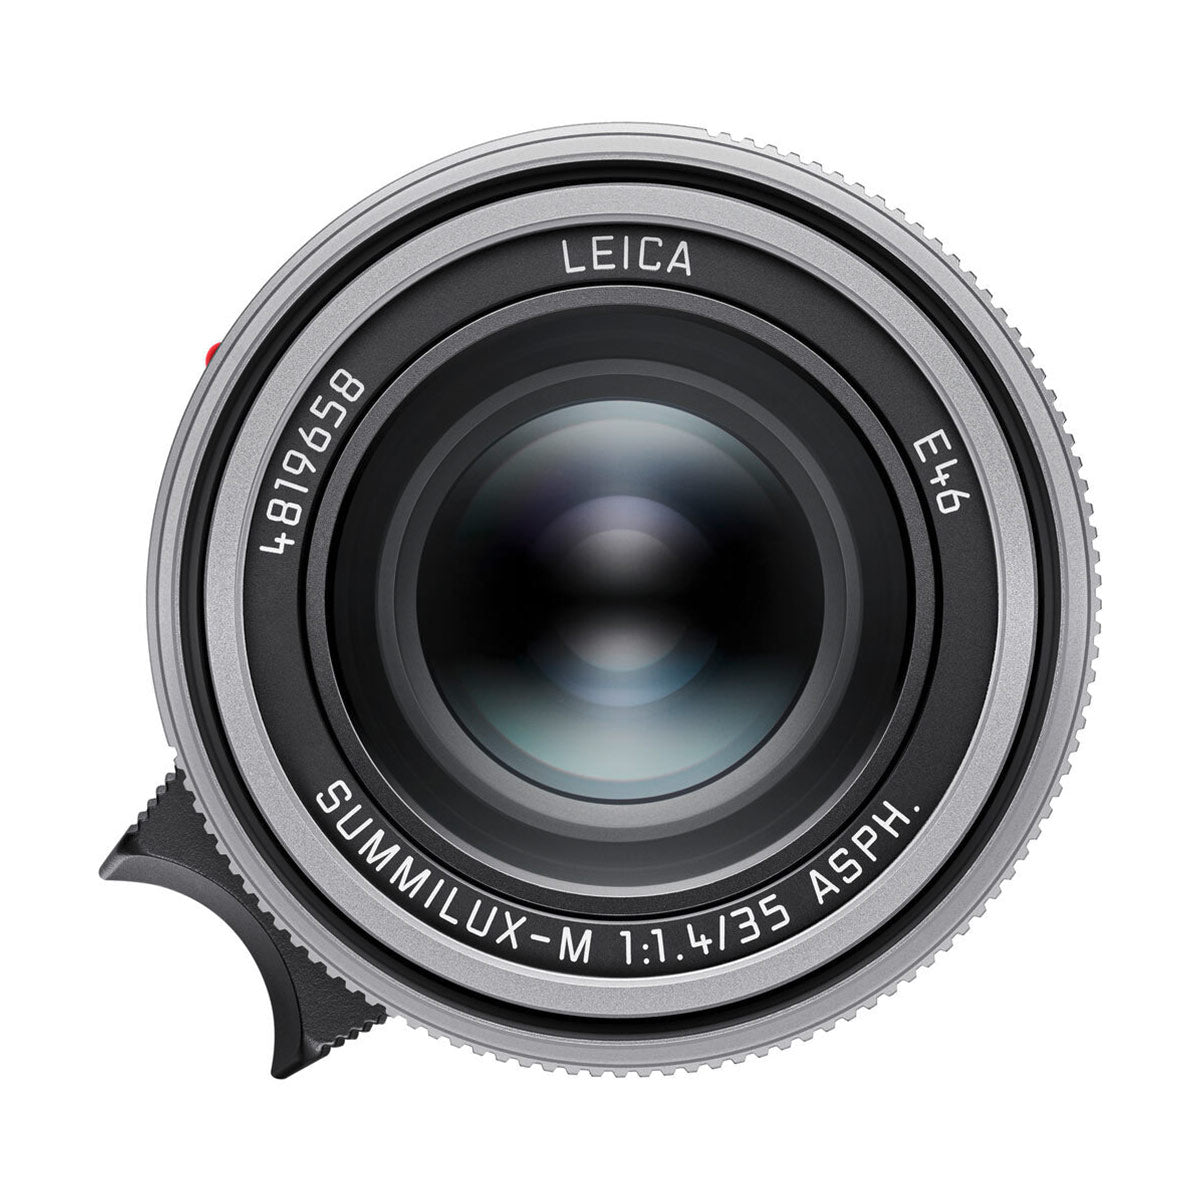 Leica 35mm f/1.4 Summilux-M ASPH Lens (Silver)